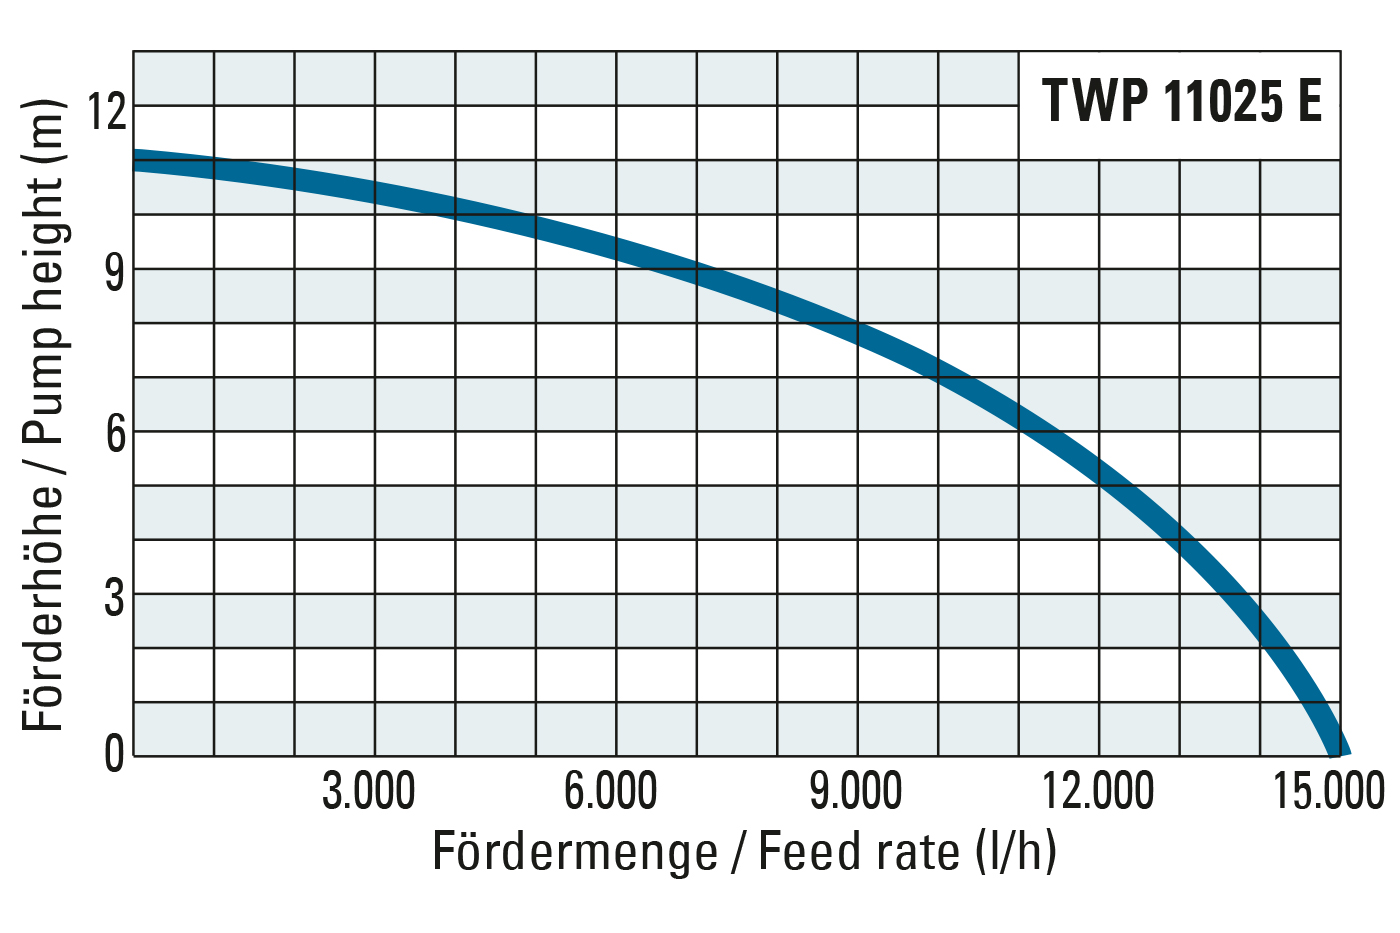 Förderhöhe und Fördermenge der TWP 11025 E